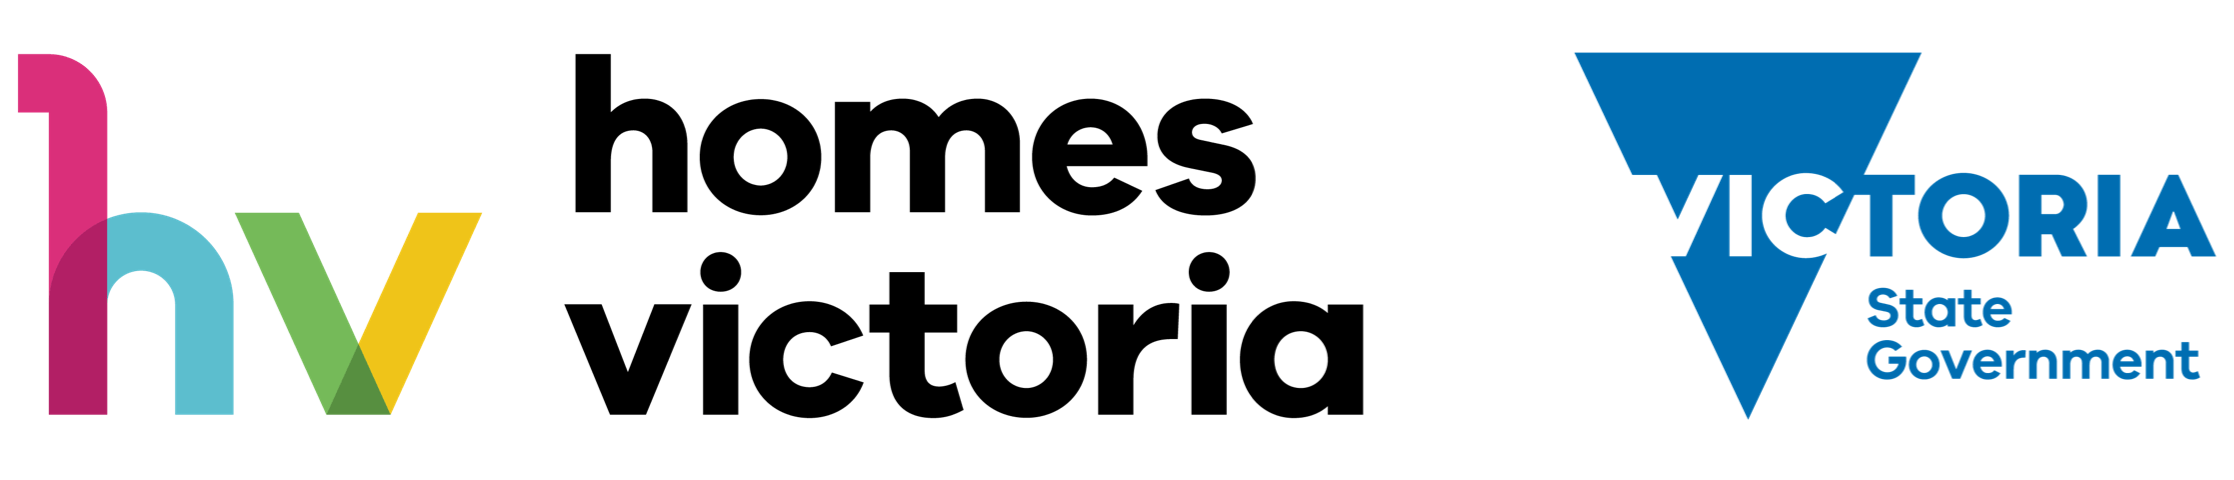 Homes Victoria & Victoria State Government Logo